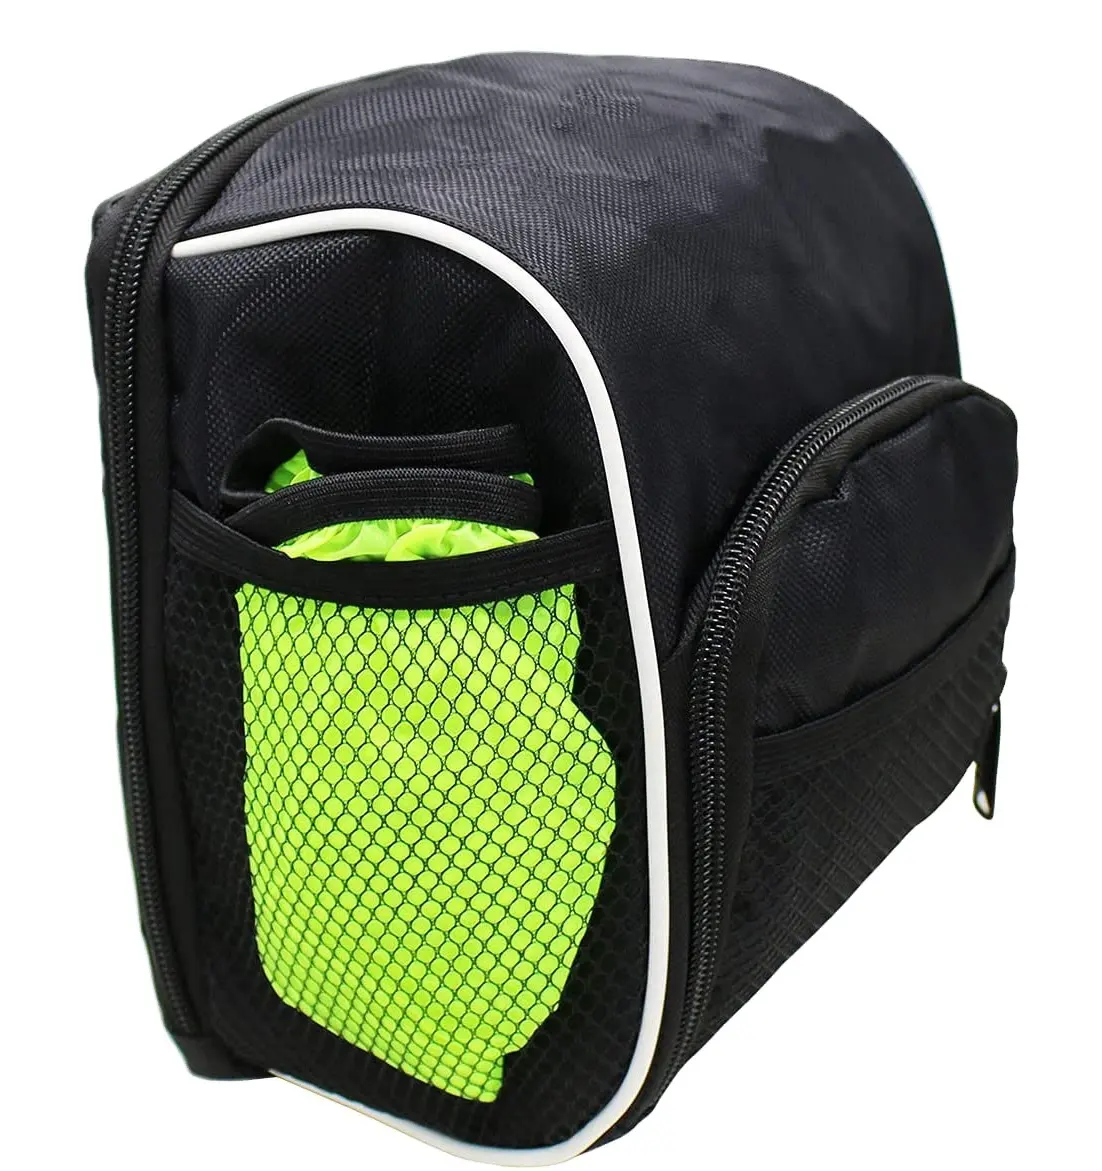 Best Price of Comfortable New Design Multi Color Scooter Balance Bike Seat Bag Handlebar Front Basket Pannier Saddle Backpack